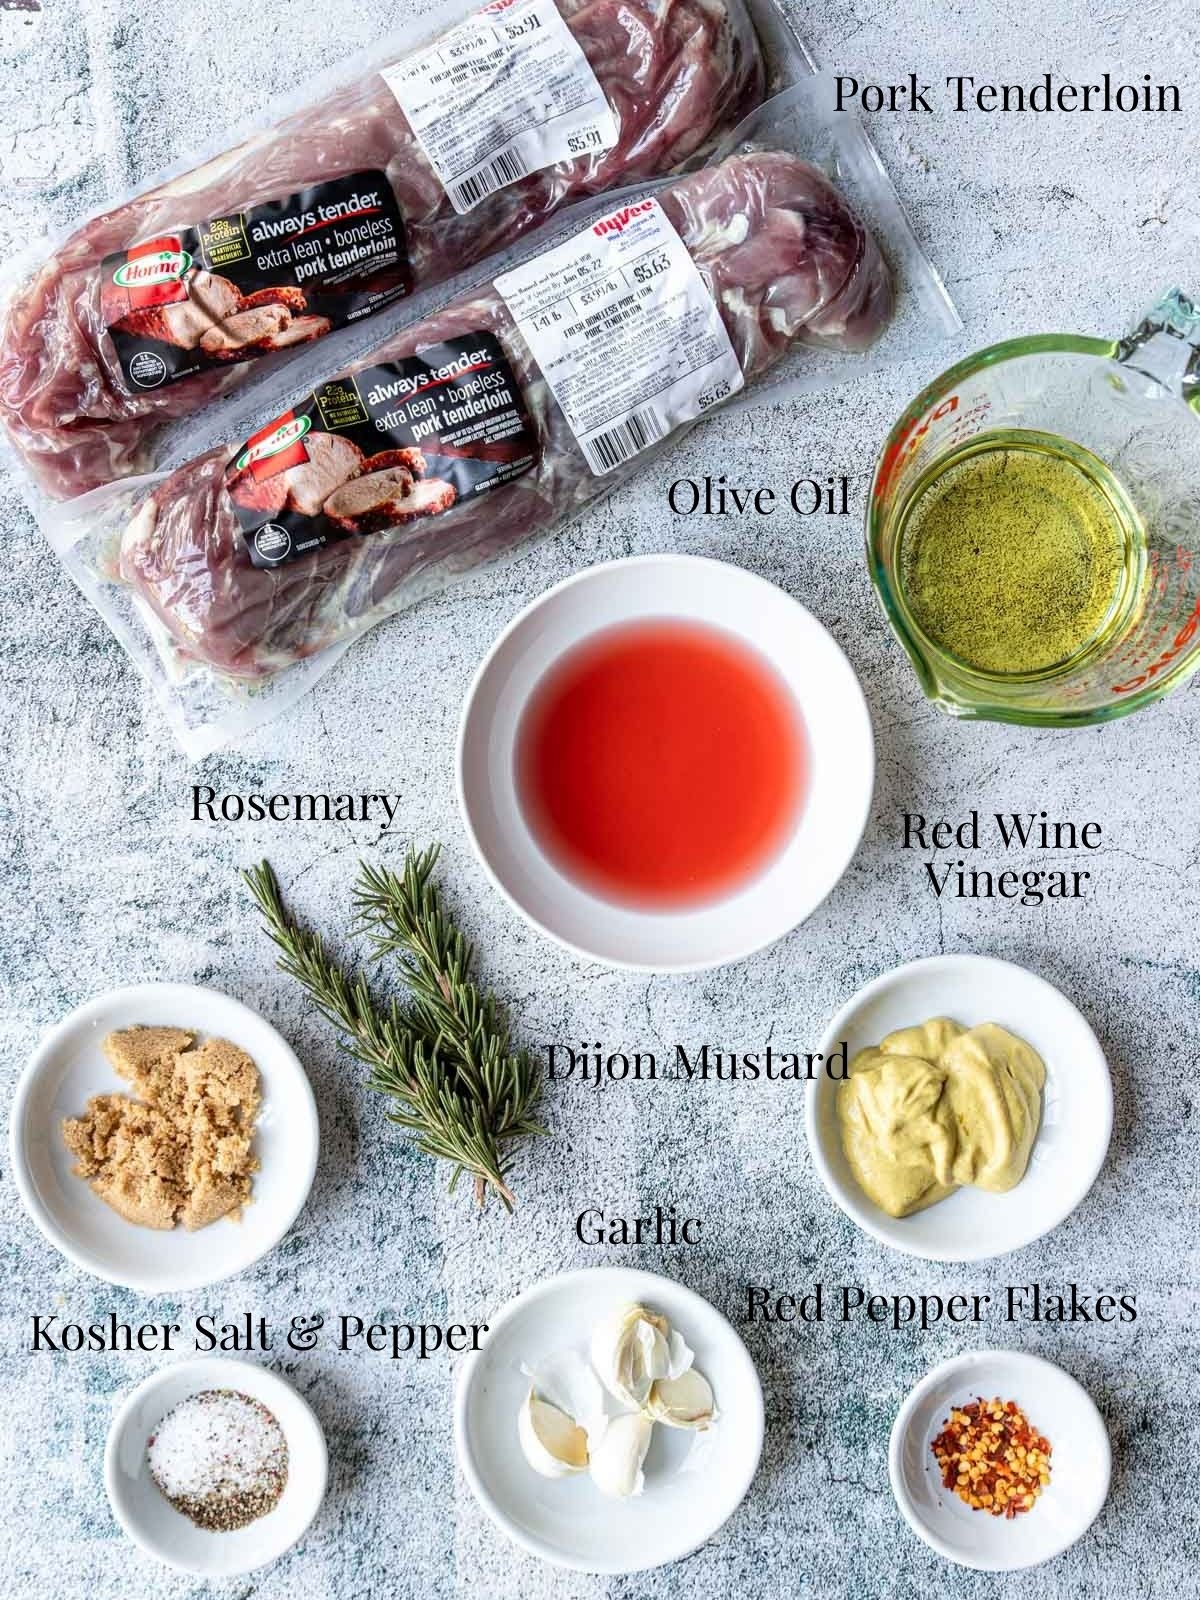 Ingredients for pork tenderloin marinade